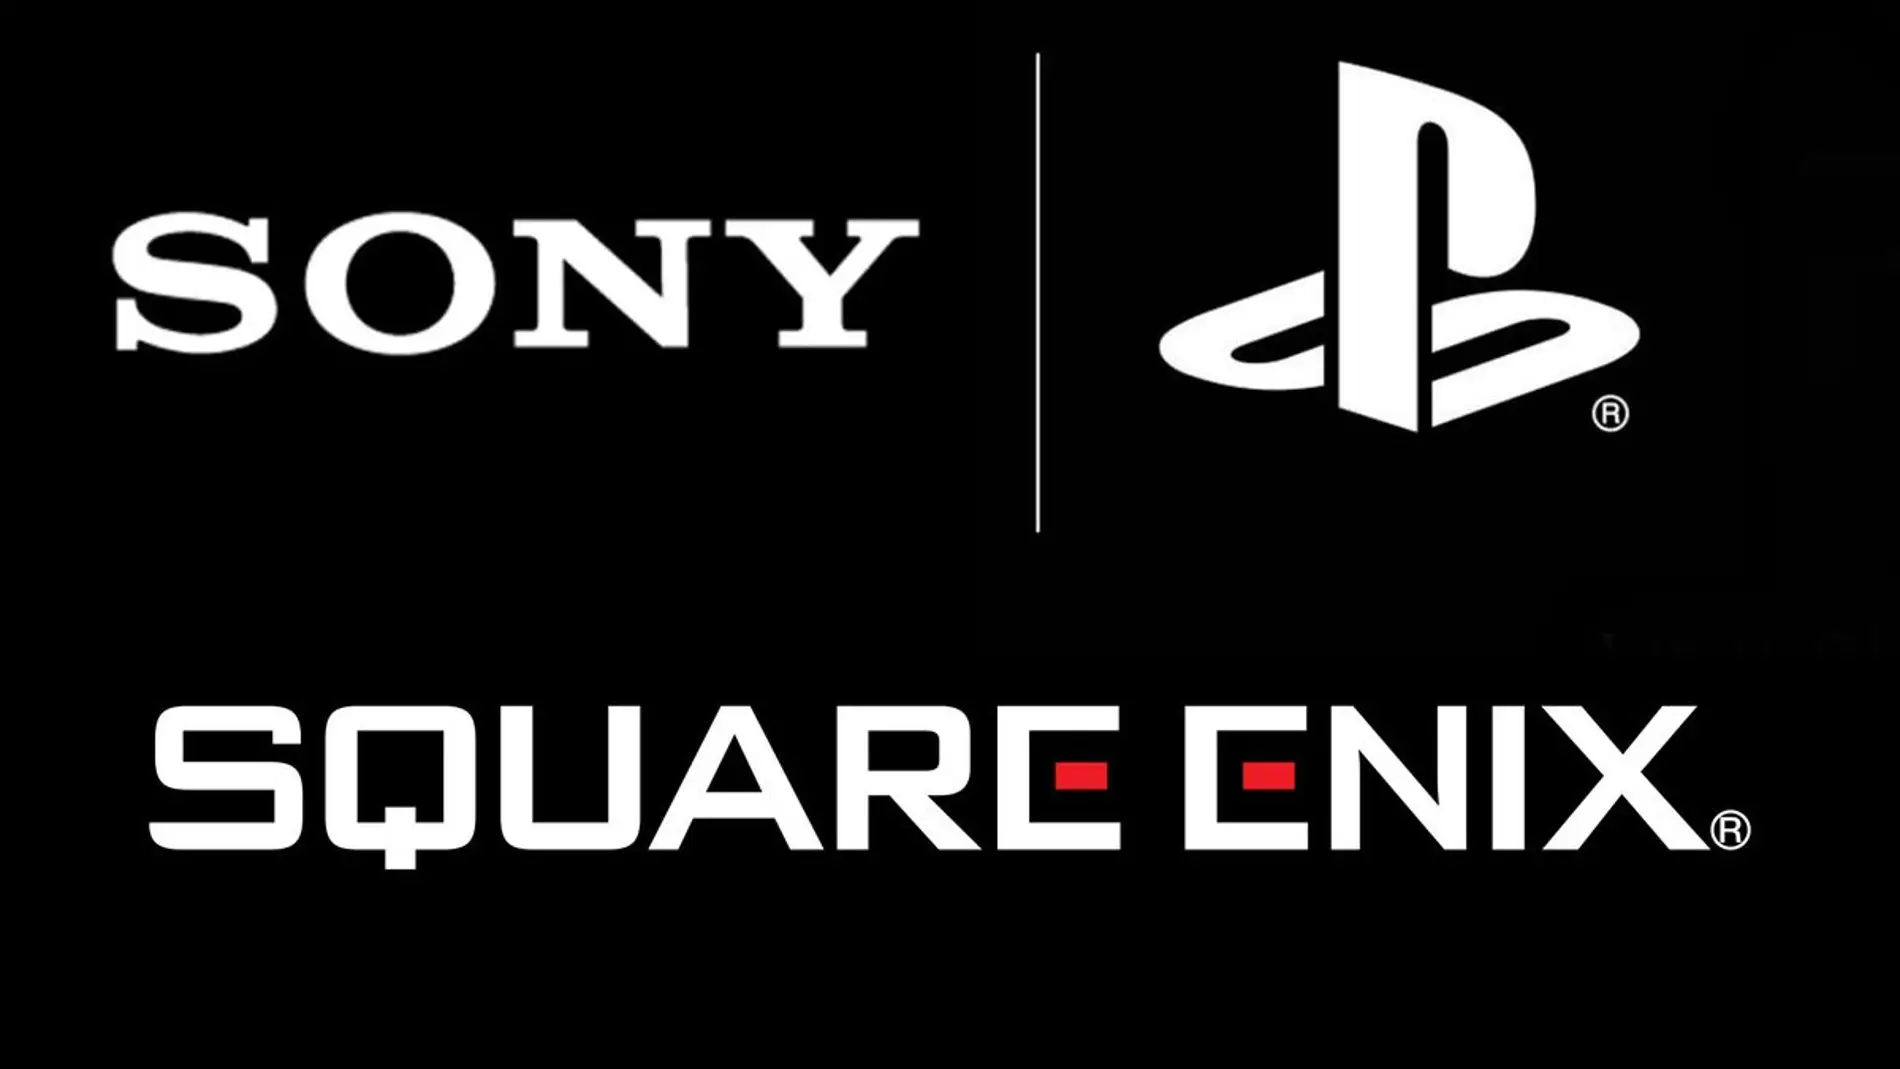 Sony podría haber comprado Square Enix según varios conocidos insiders